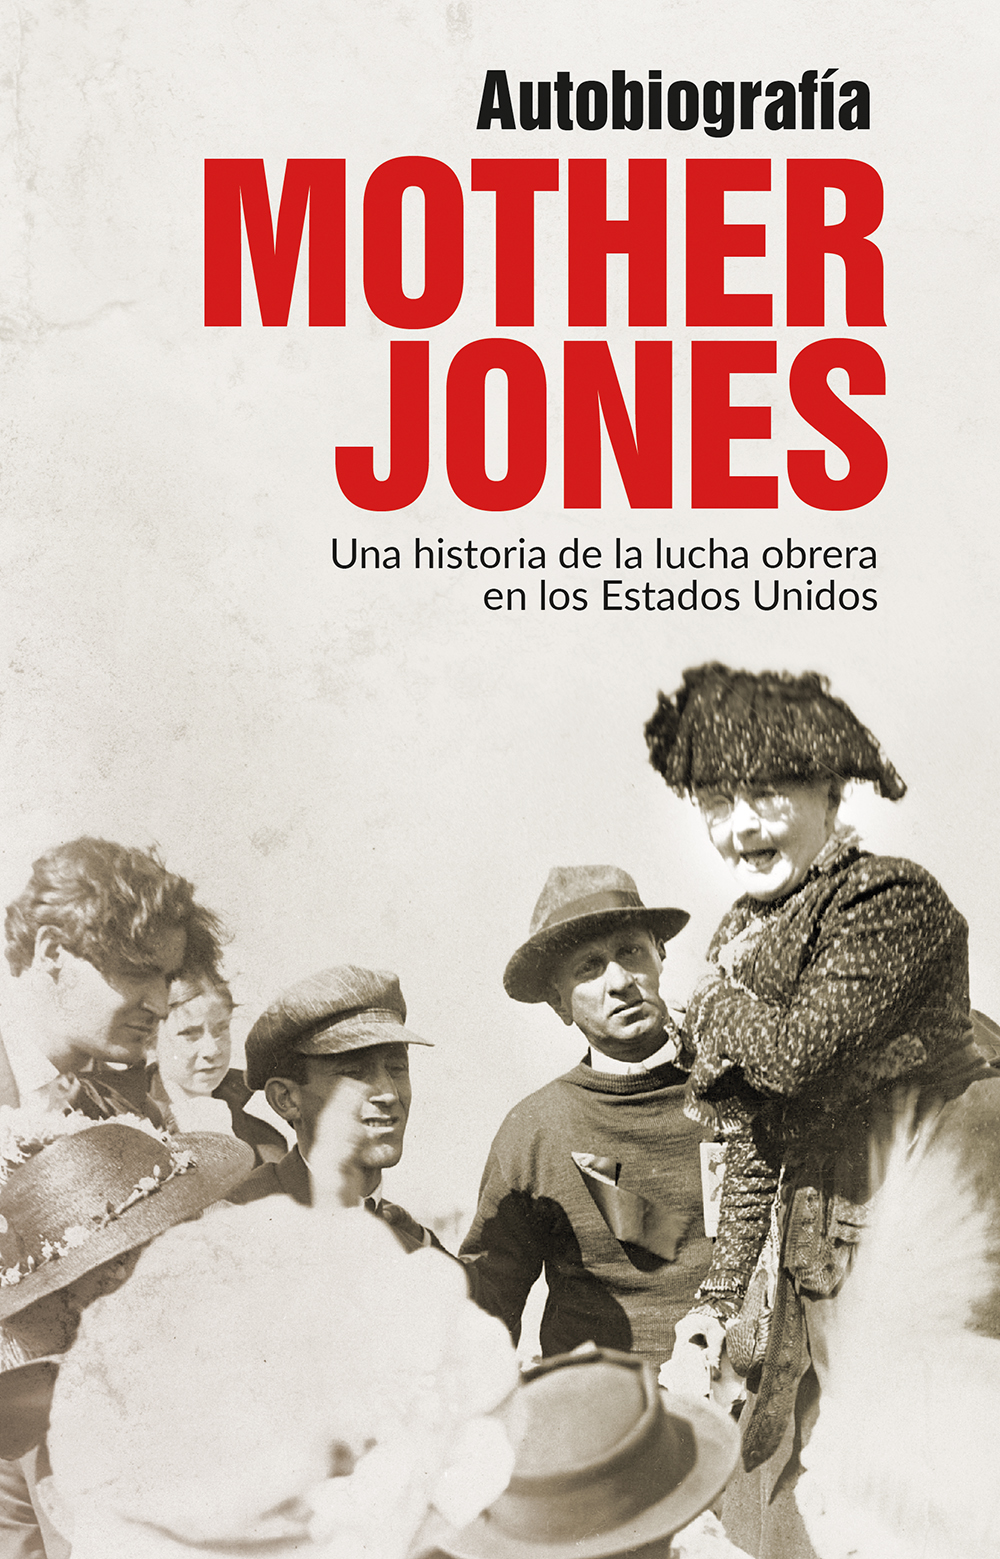 Mother Jones, autobiografía